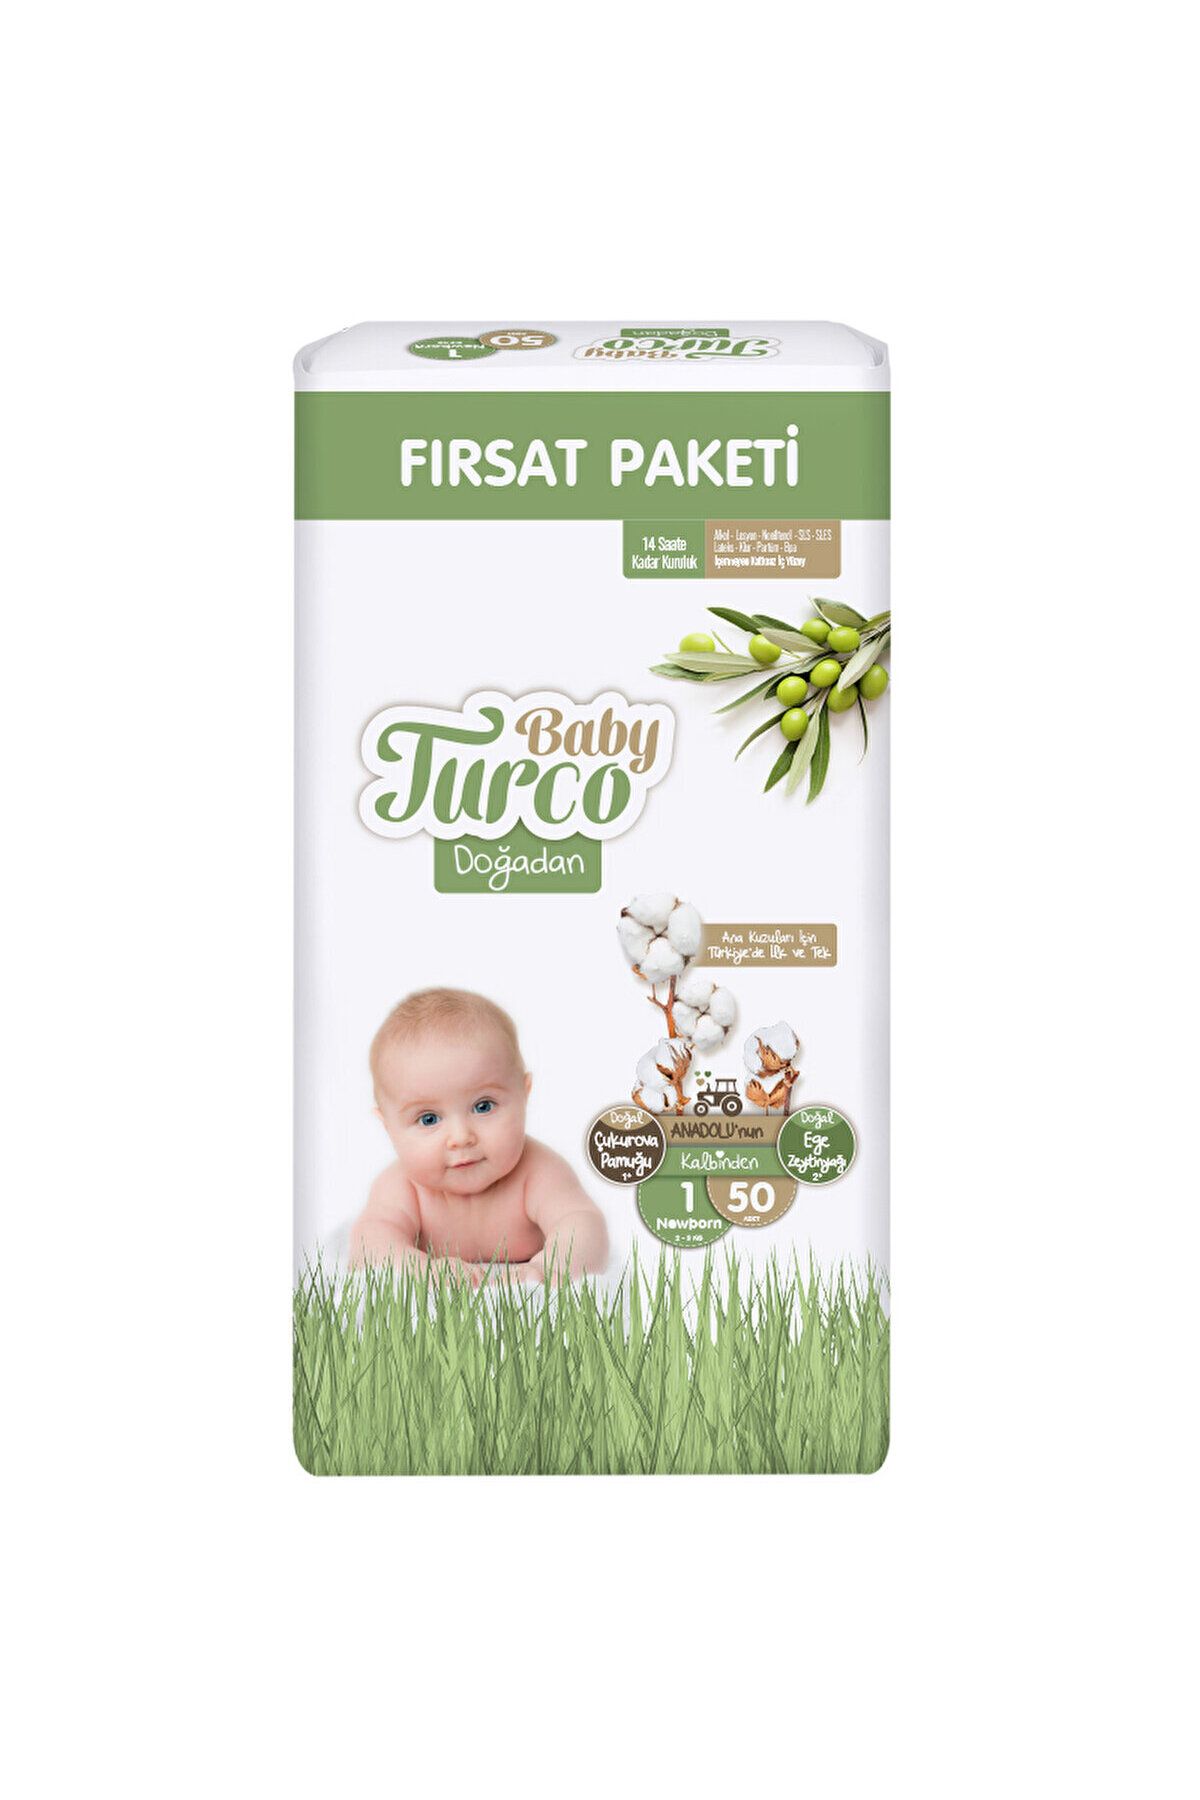 Baby Turco Doğadan Fırsat Paketi 1 Beden Newborn Bebek Bezi 50'li